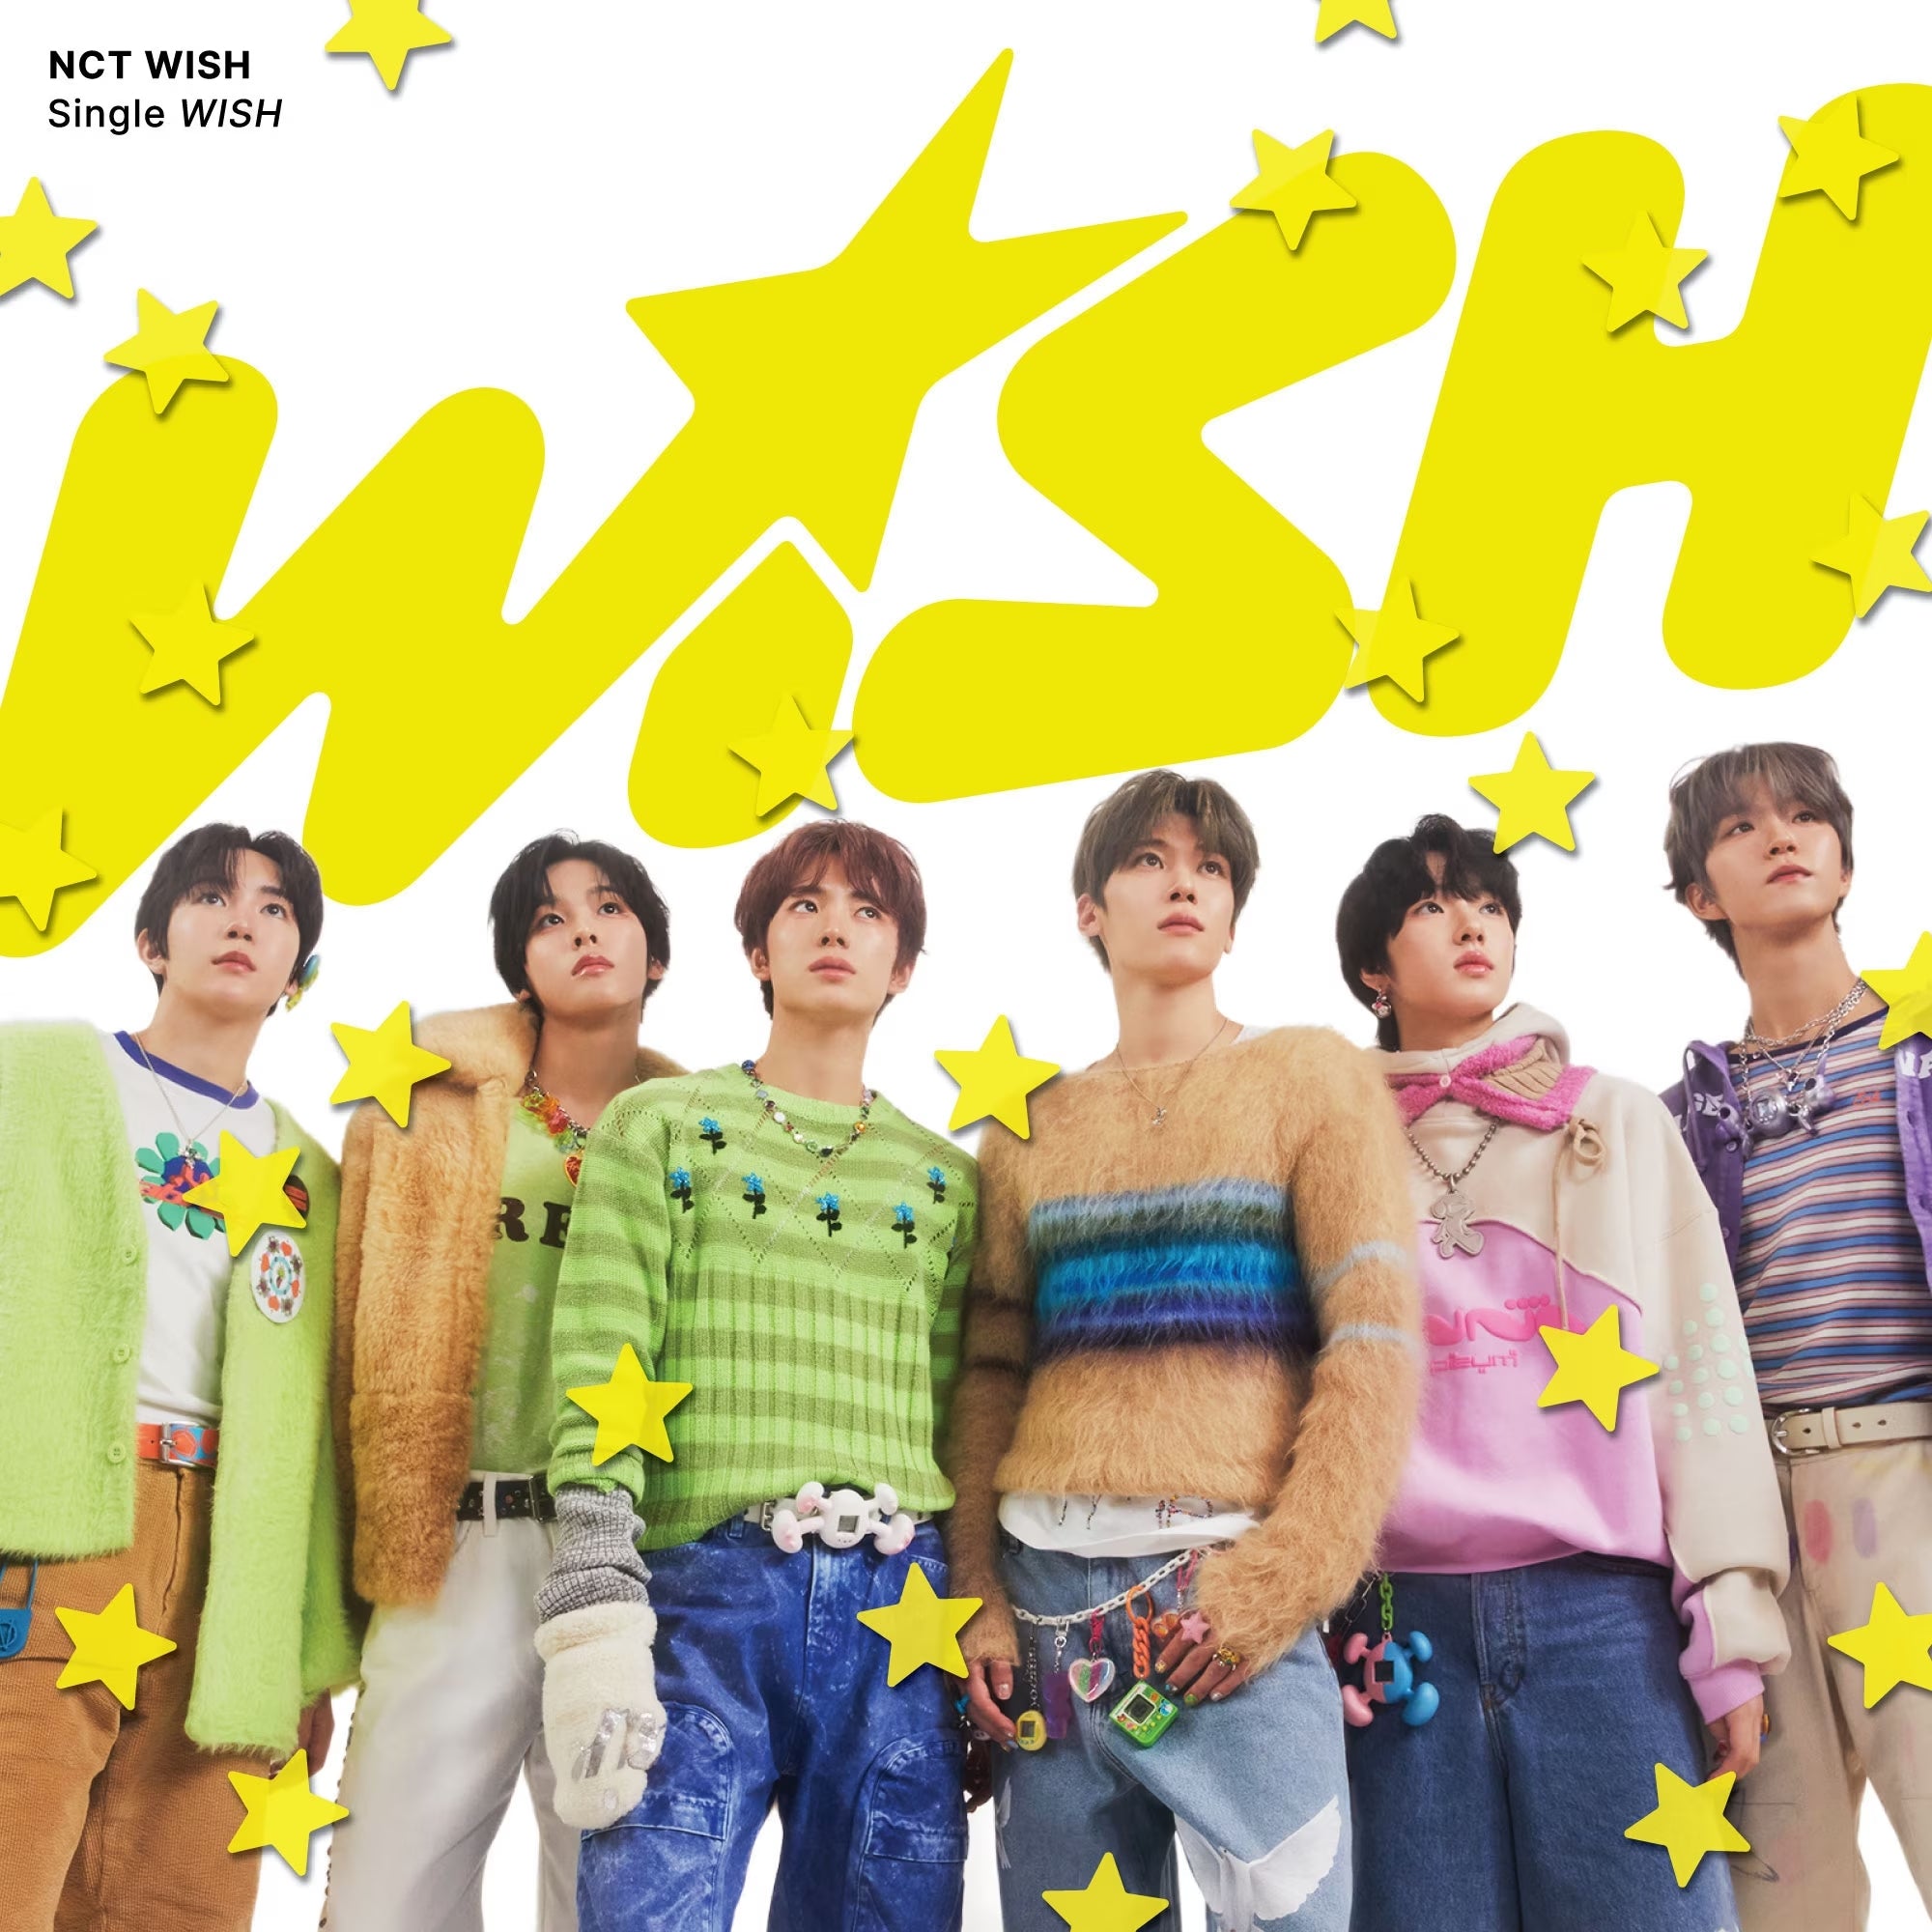 NCT WISH - Japan 1st SINGLE WISH